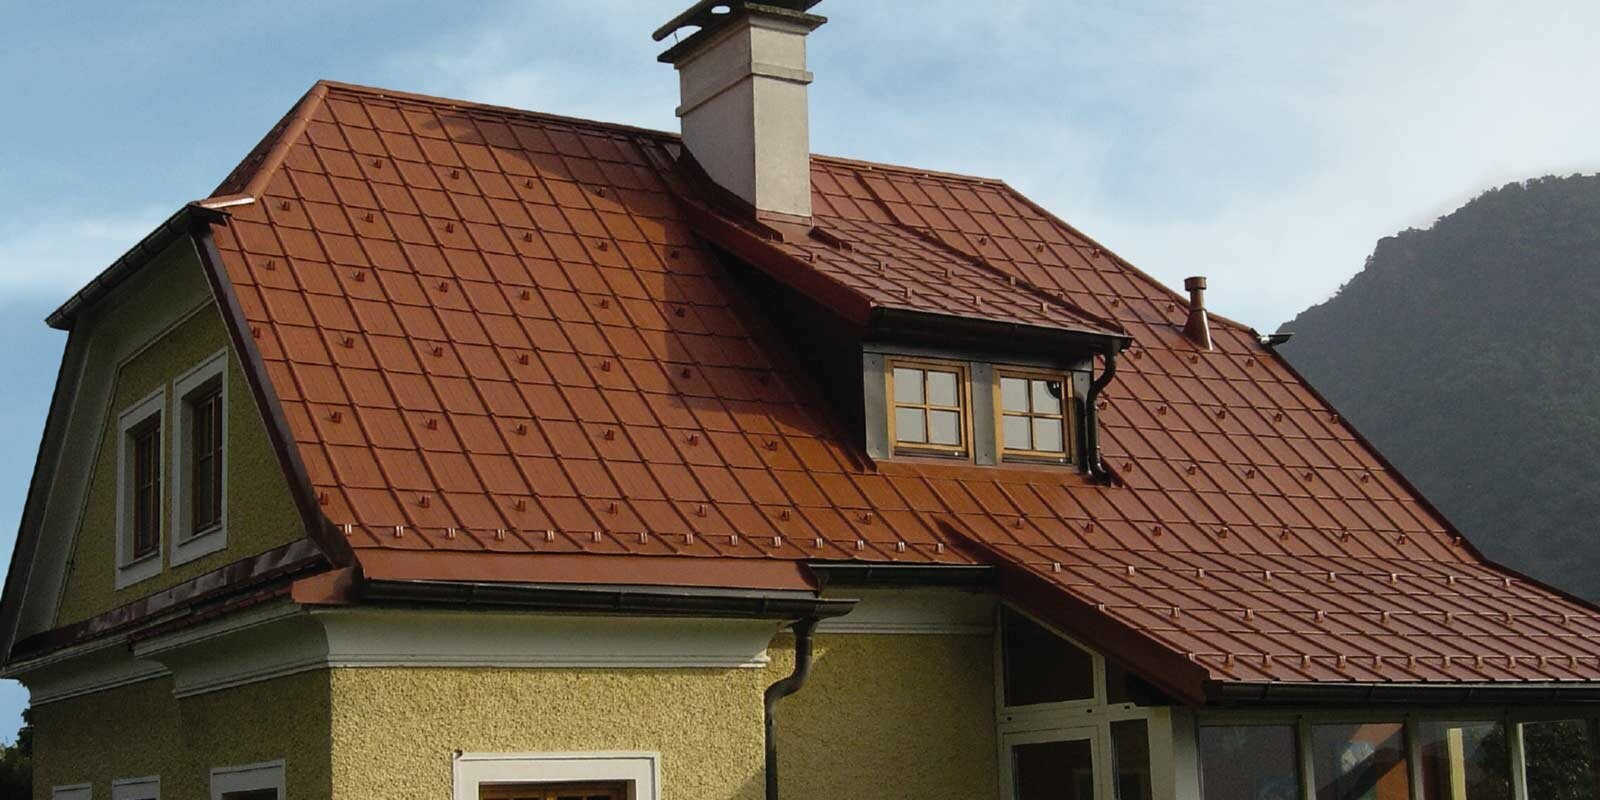 Maison individuelle avec toiture à deux pans en croupe et lucarne, fraîchement rénovée à l’aide de tuiles PREFA couleur rouge tuile